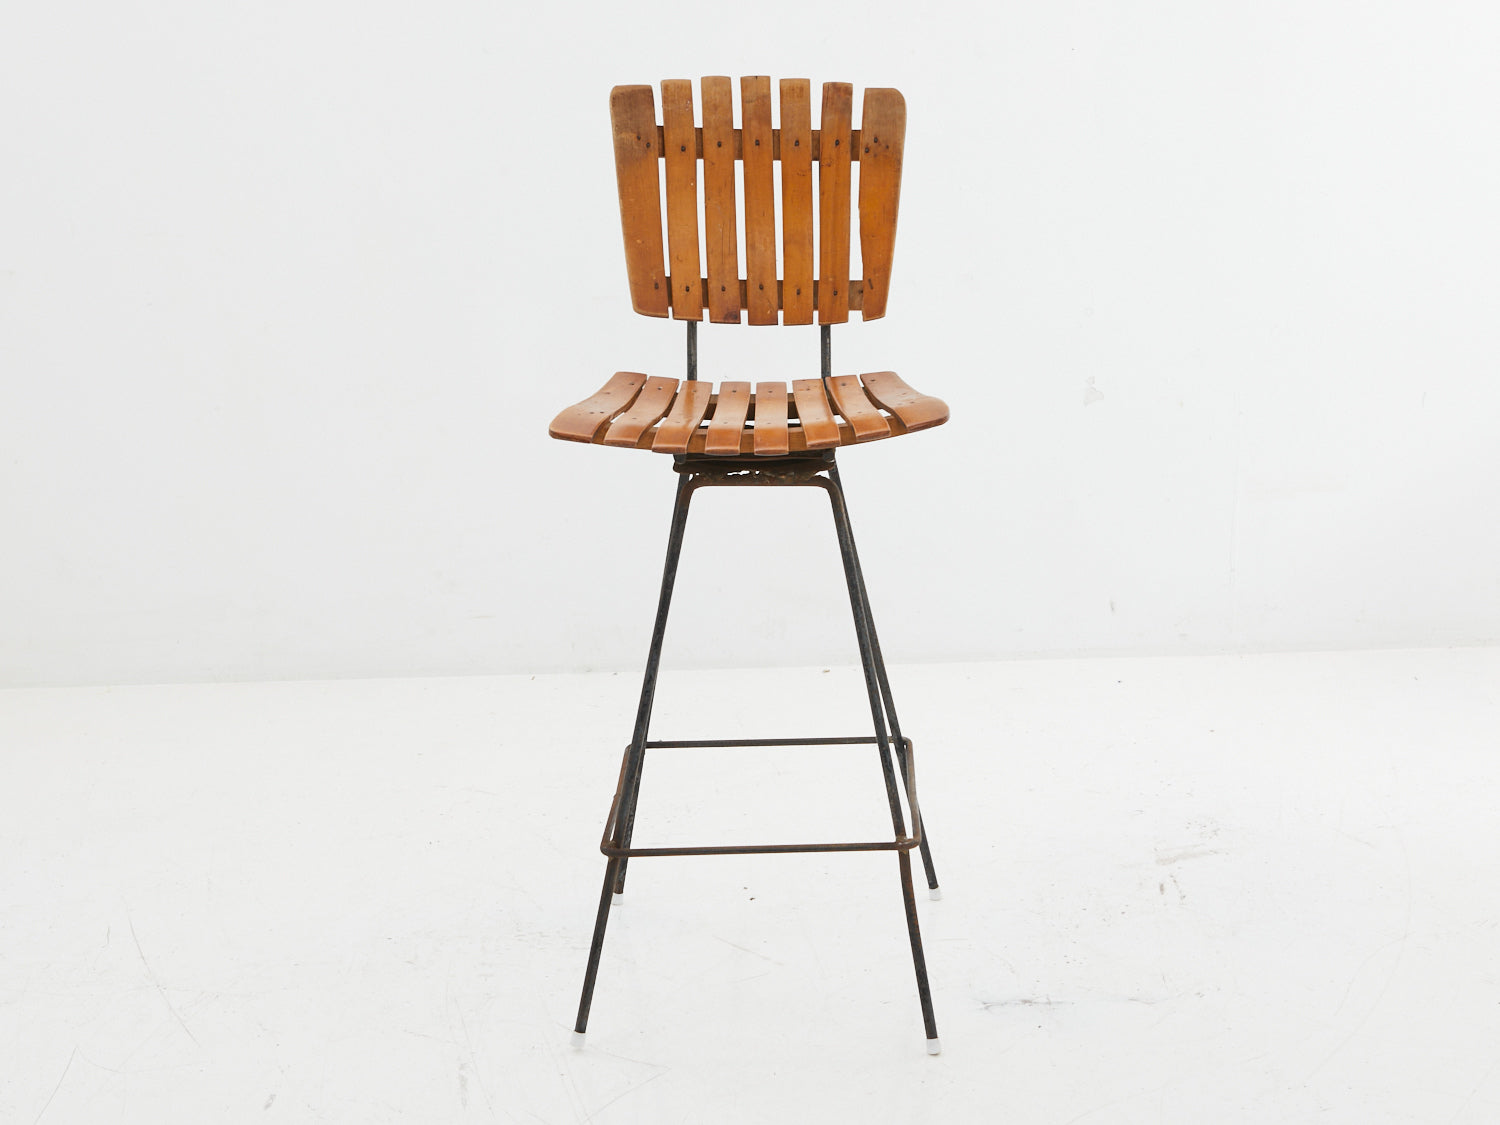 Wood slatted stool with iron seat base by Arthur Umanoff